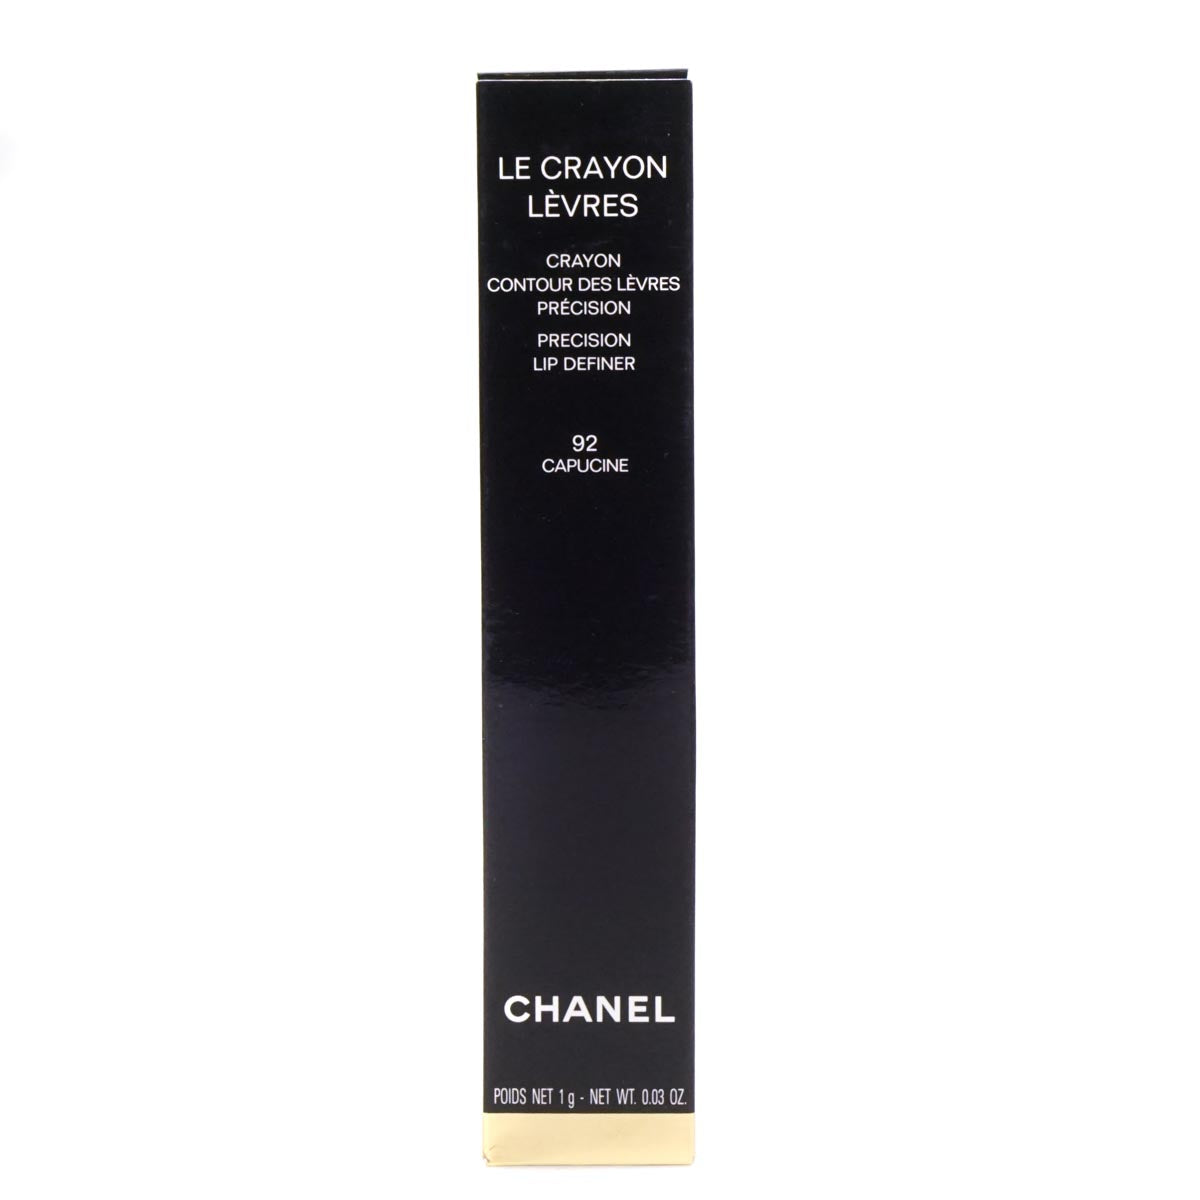 Chanel Le Crayon Levres Precision Lip Definer 92 Capucine